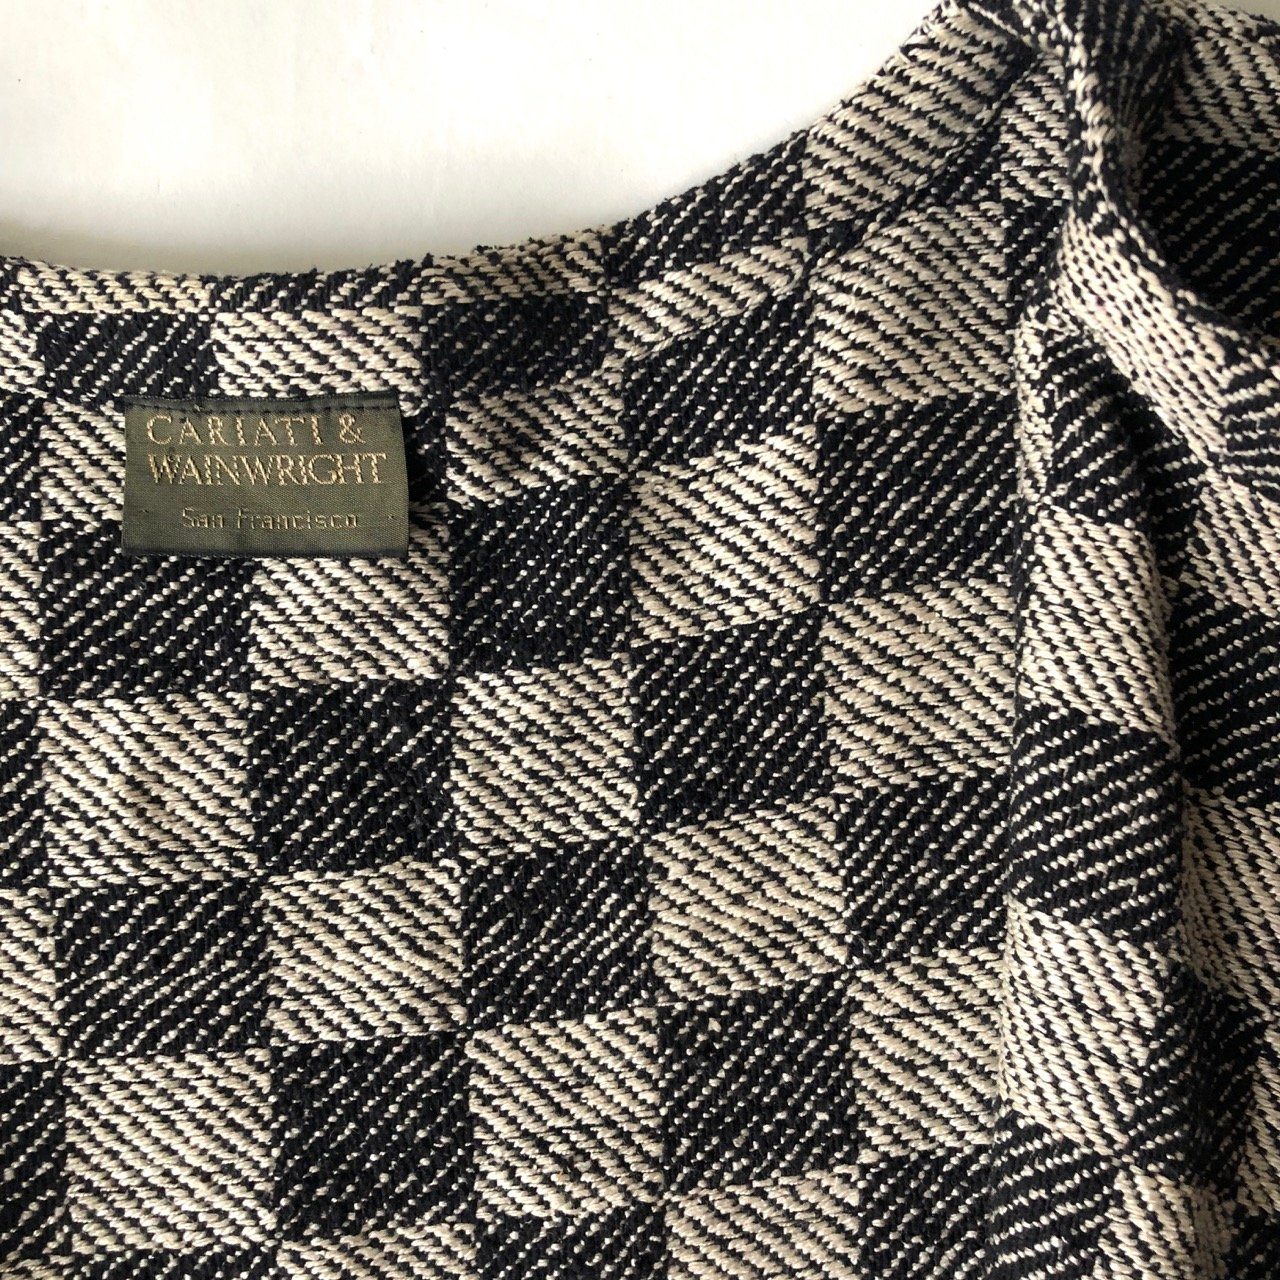 Vintage Cariati & Wainwright woven bolero jacket